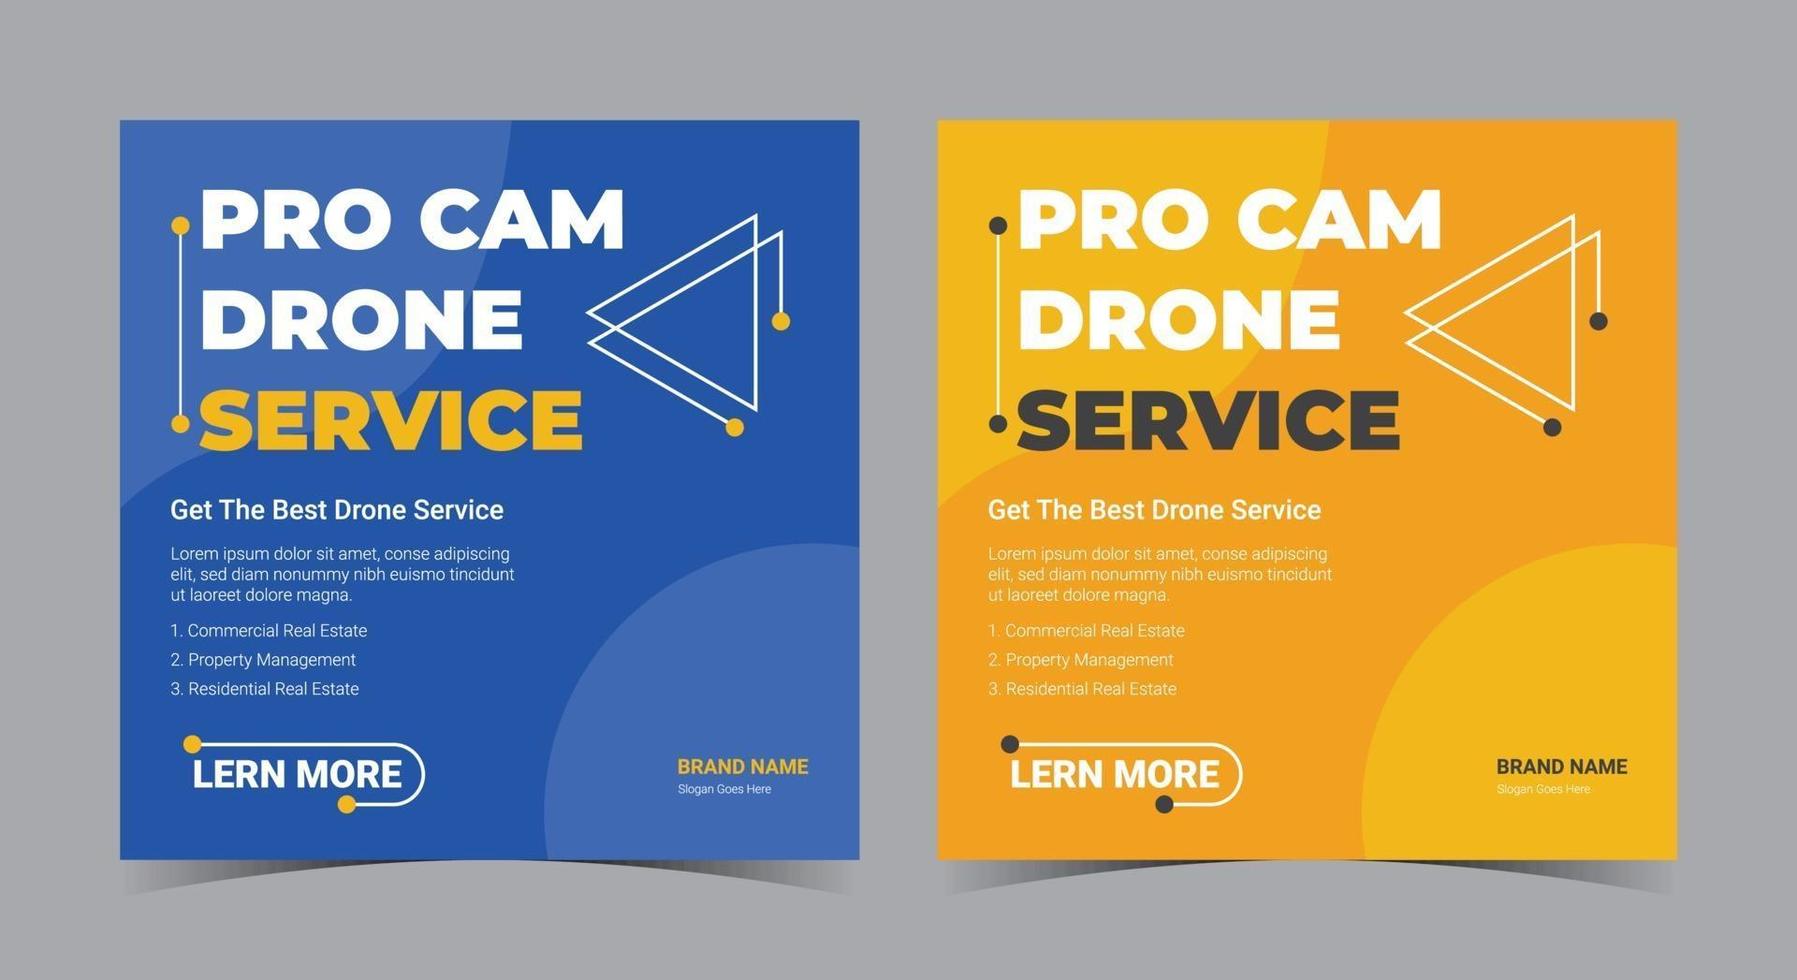 pro cam drone service affisch, drone social media post och flyer vektor